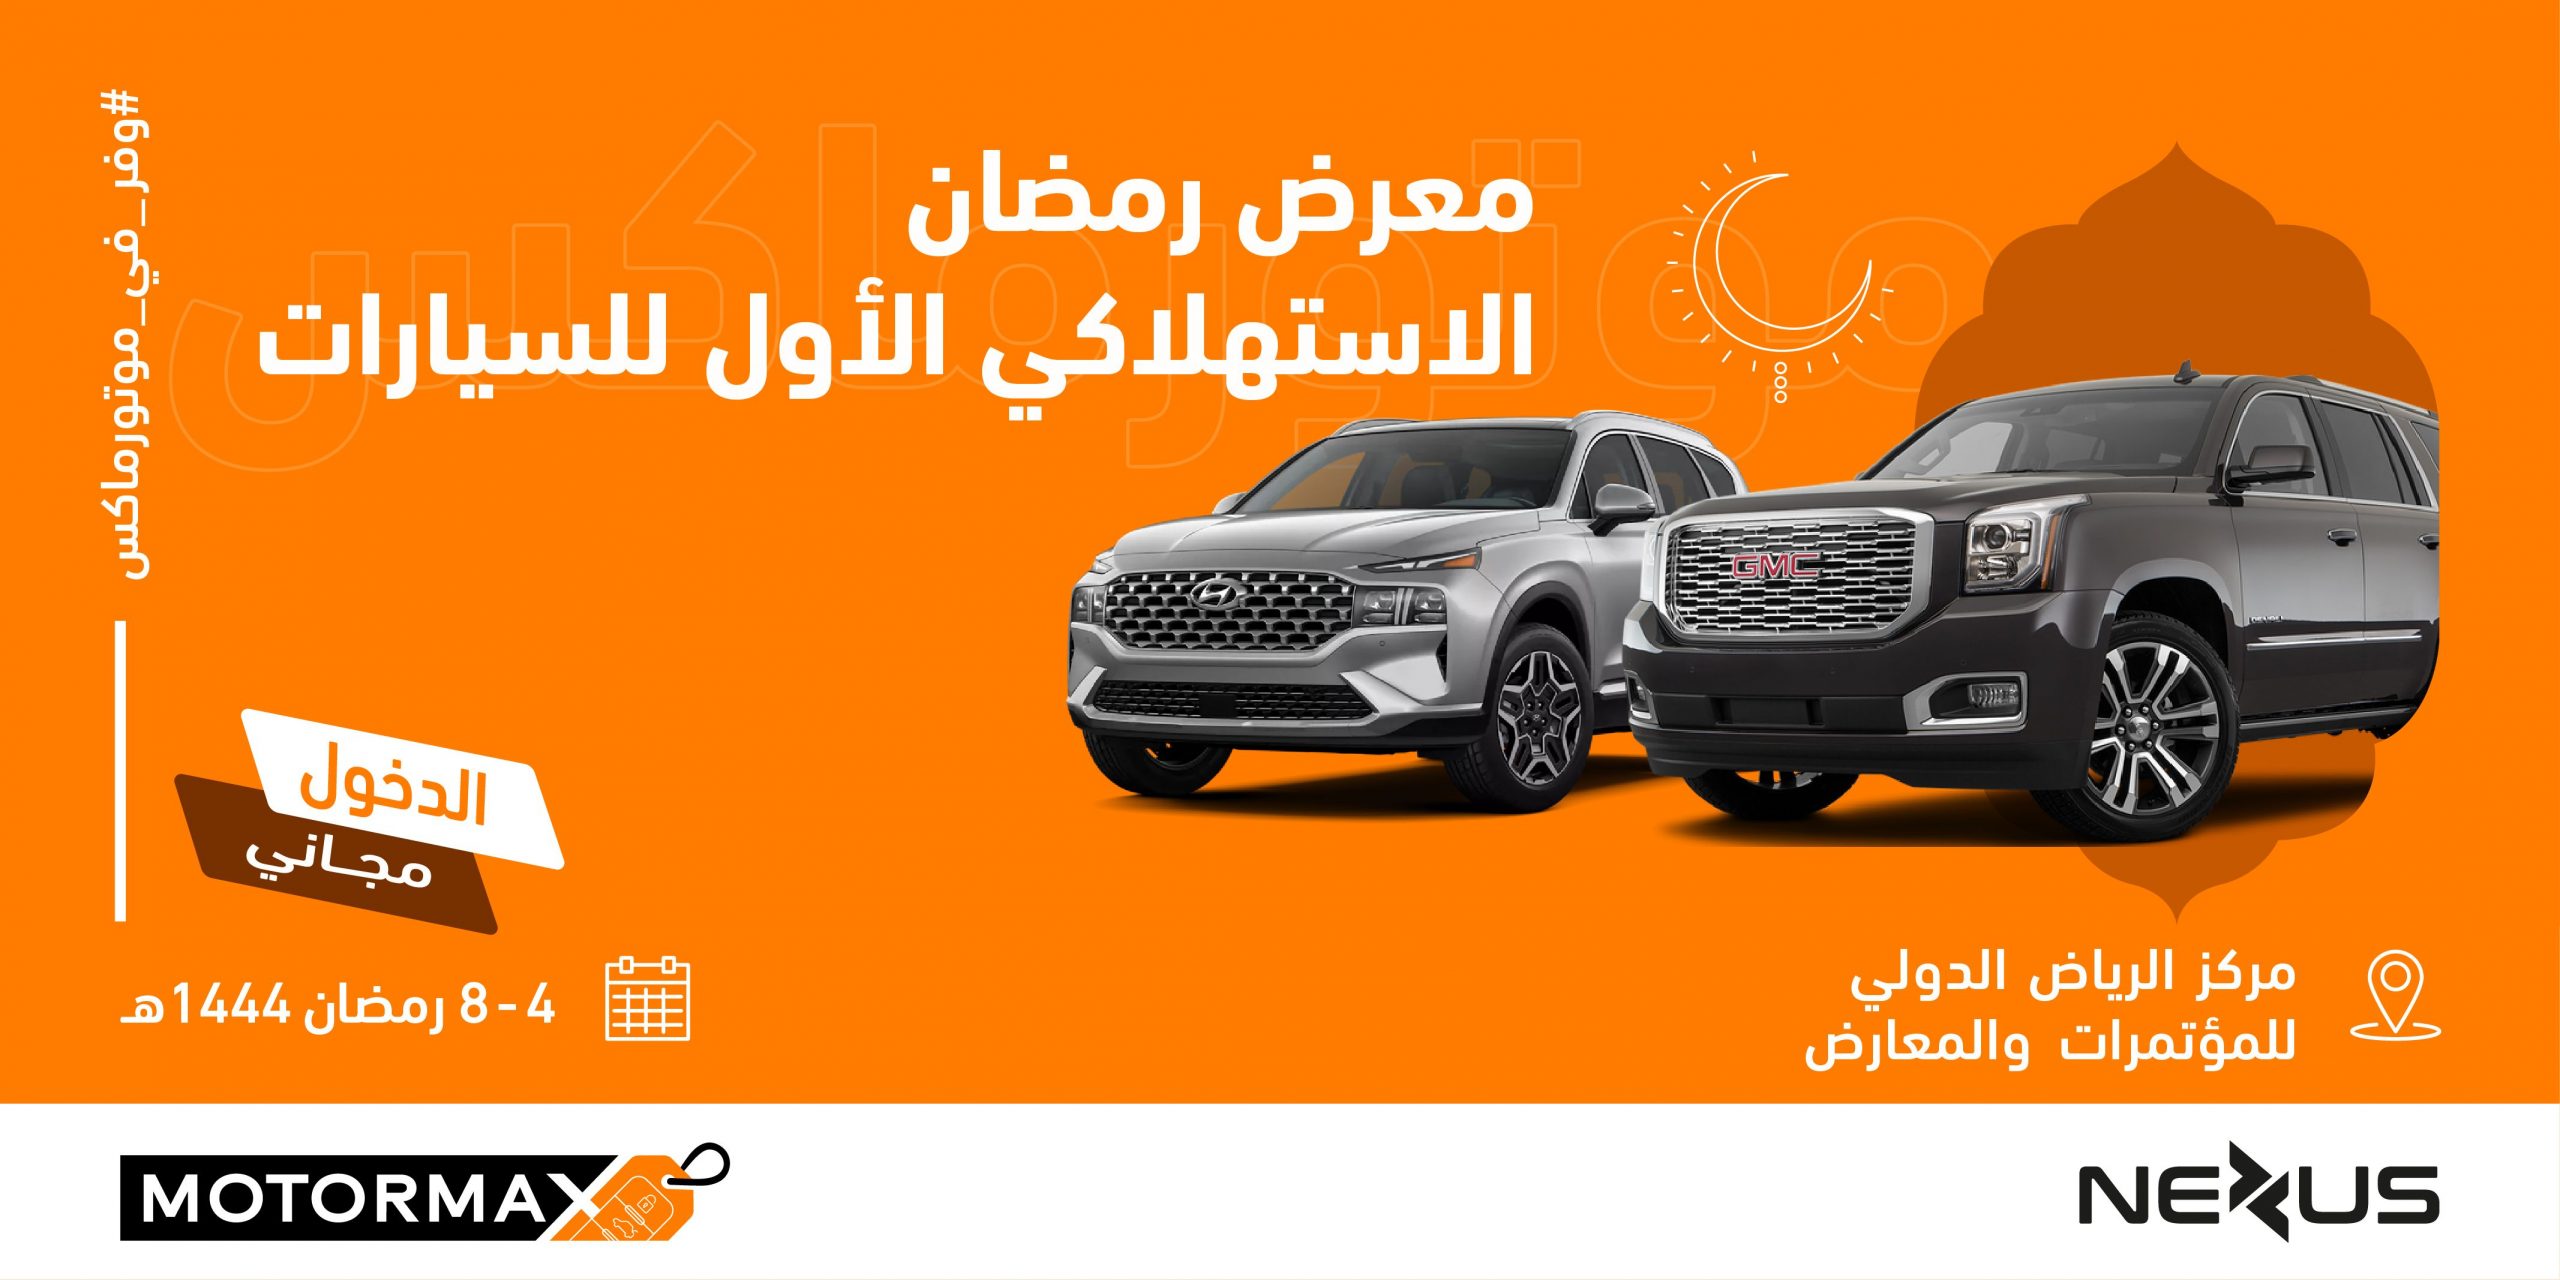 معرض رمضان الاستهلاكي للسيارات "موتورماكس" يستقبل زواره خلال شهر رمضان المبارك في مركز الرياض الدولي للمؤتمرات والمعارض 16